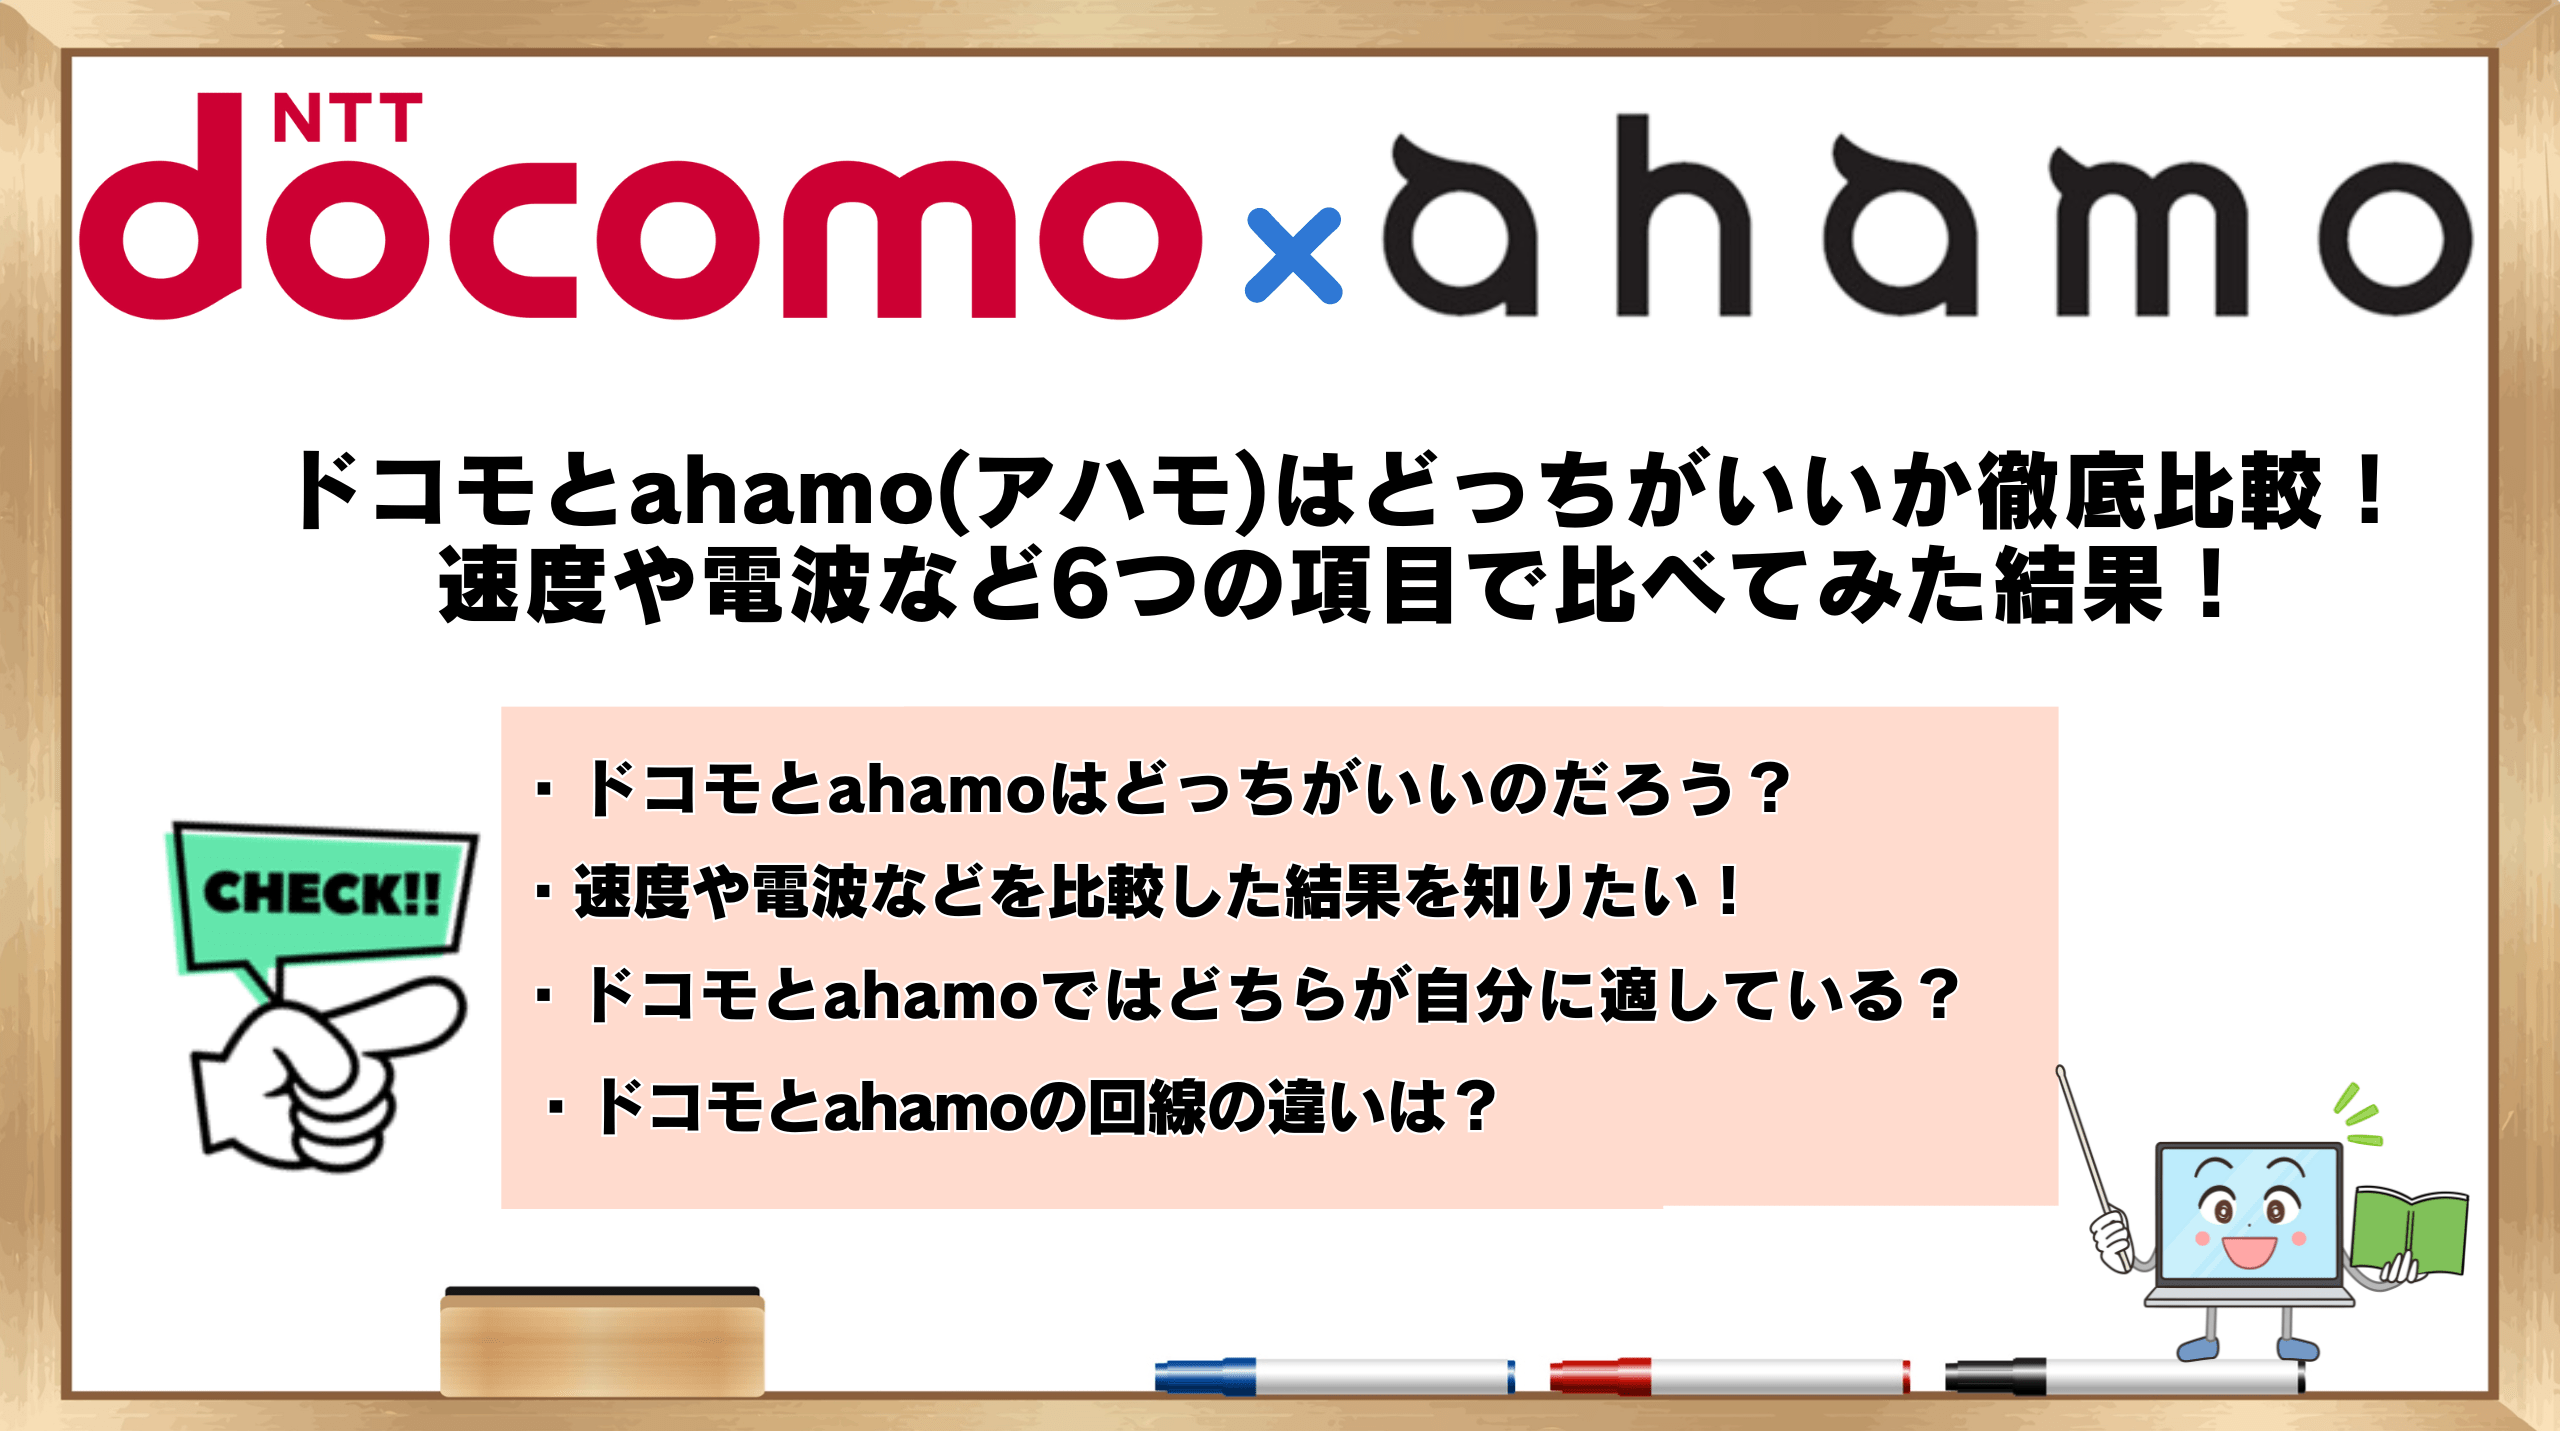 ドコモ-ahamoどっち